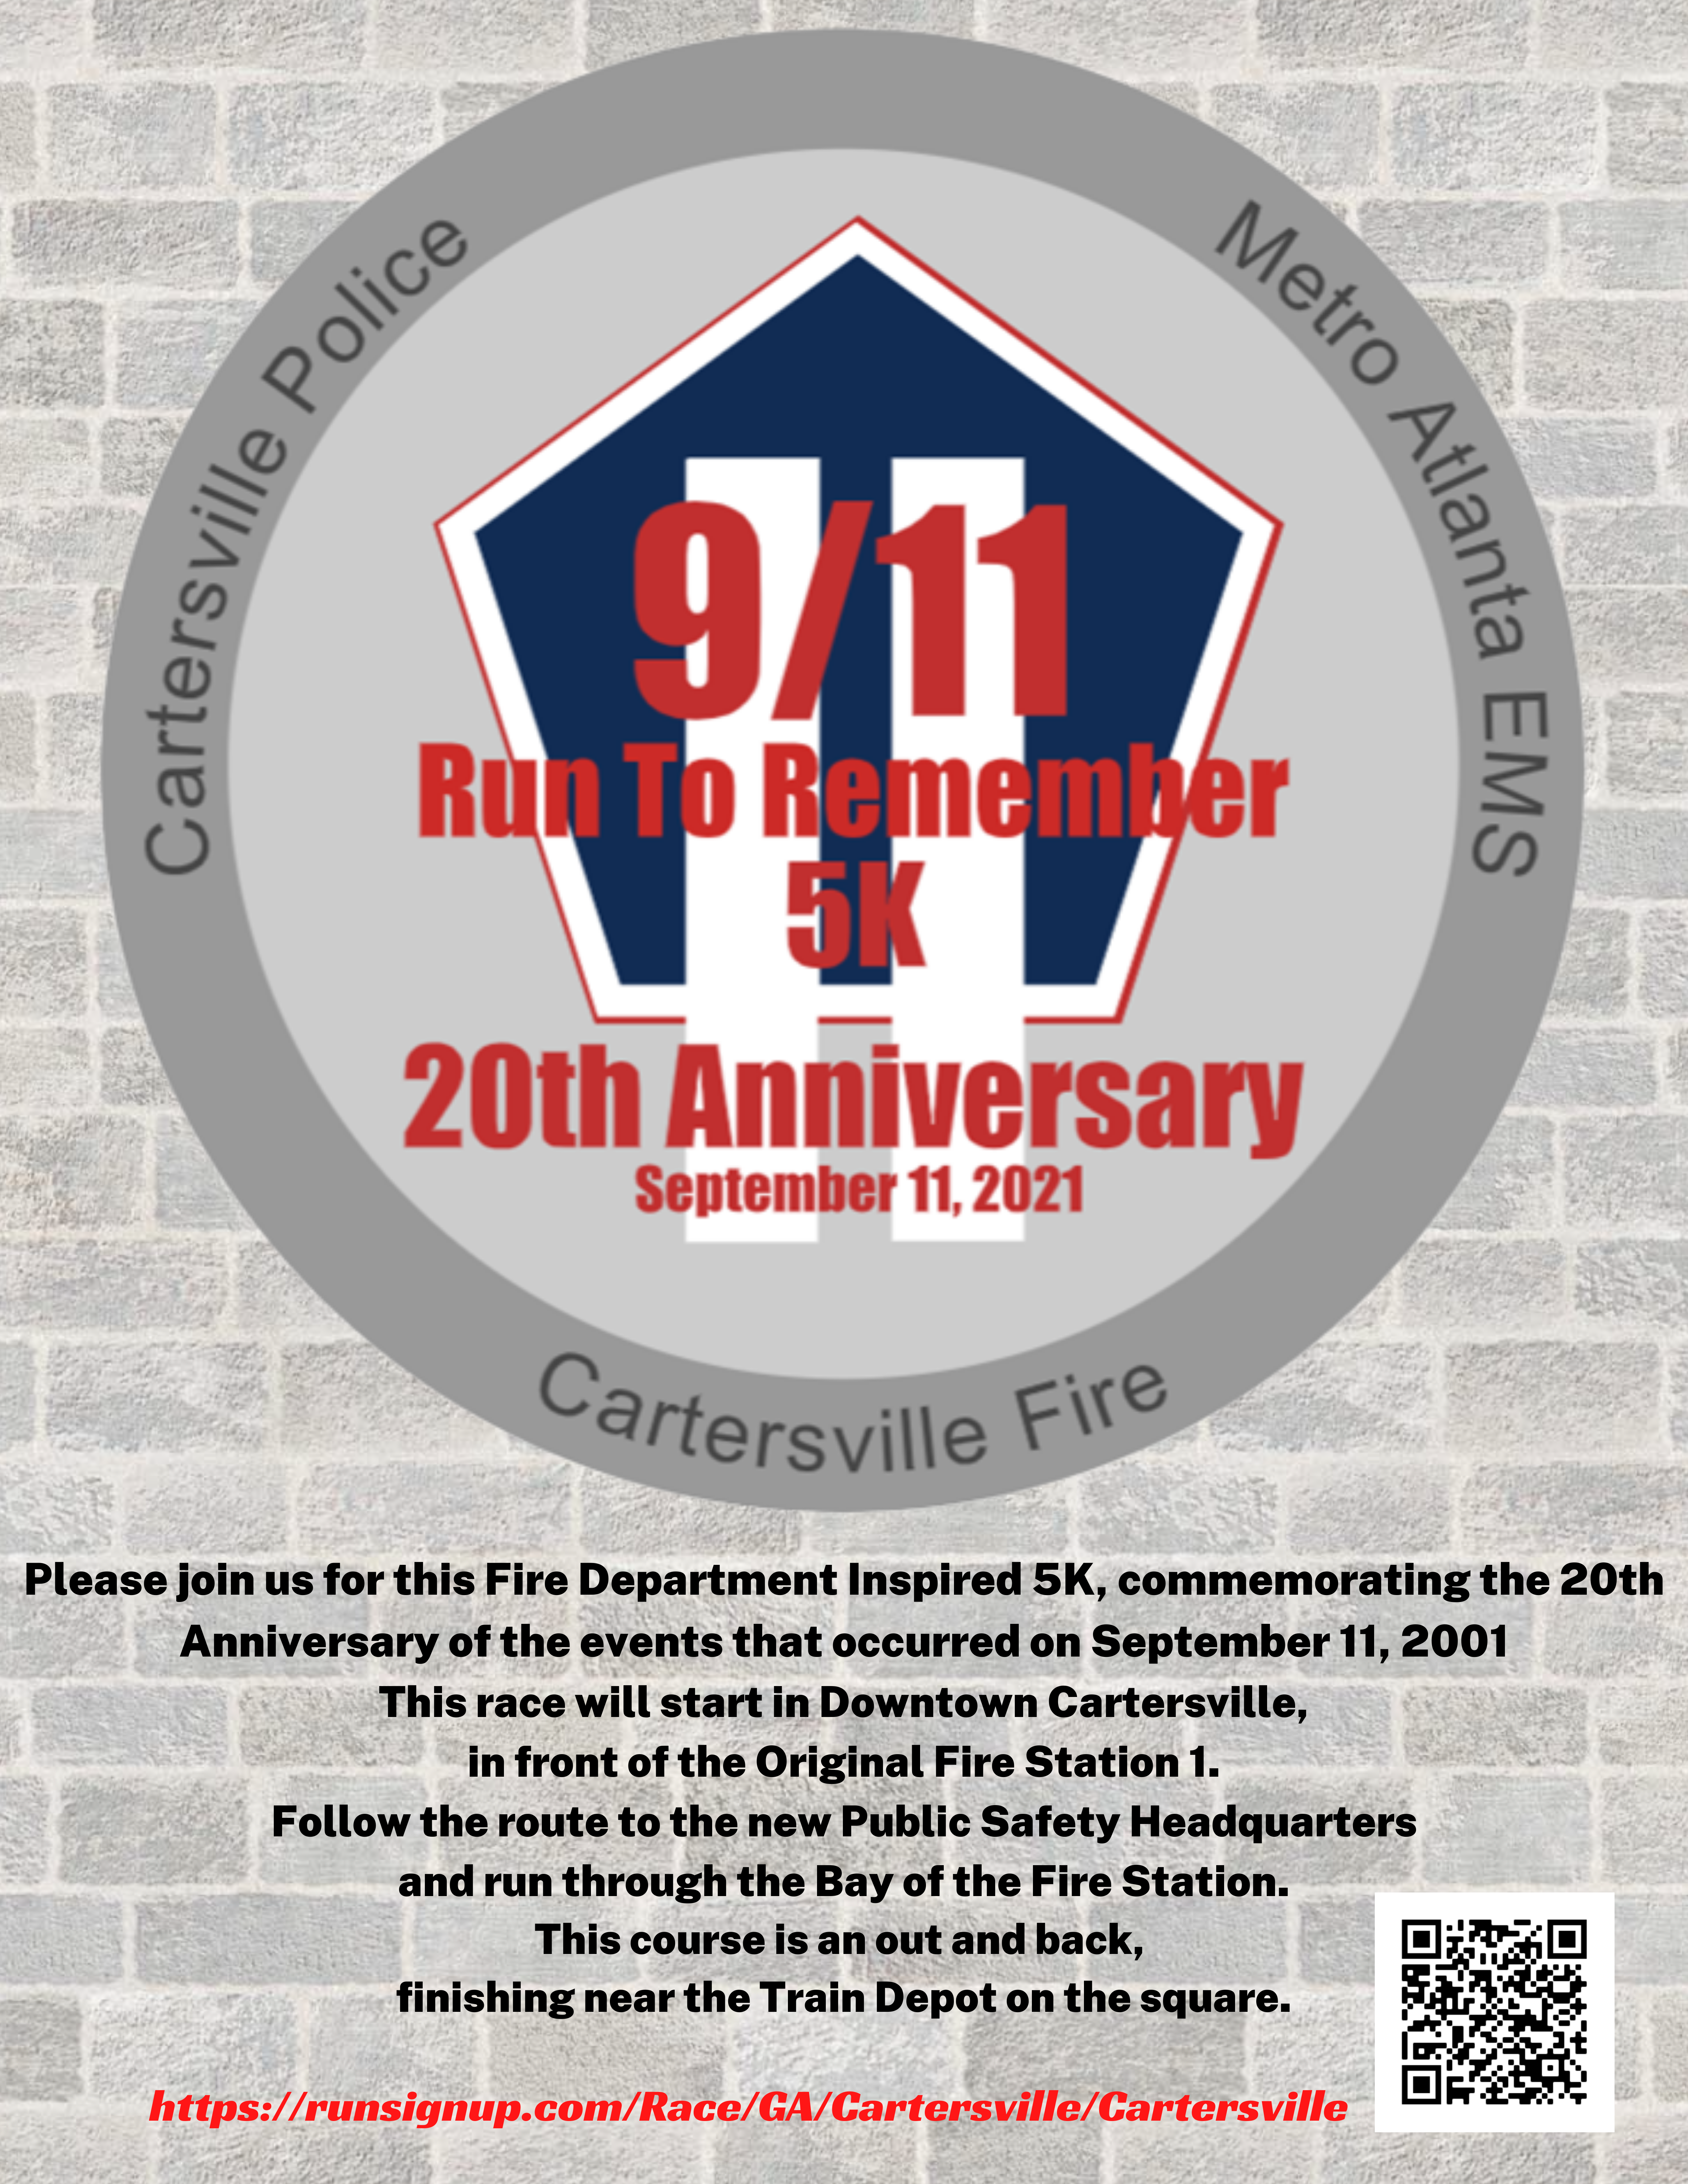 Cartersville Fire Department 9/11 Run to Remember 5K